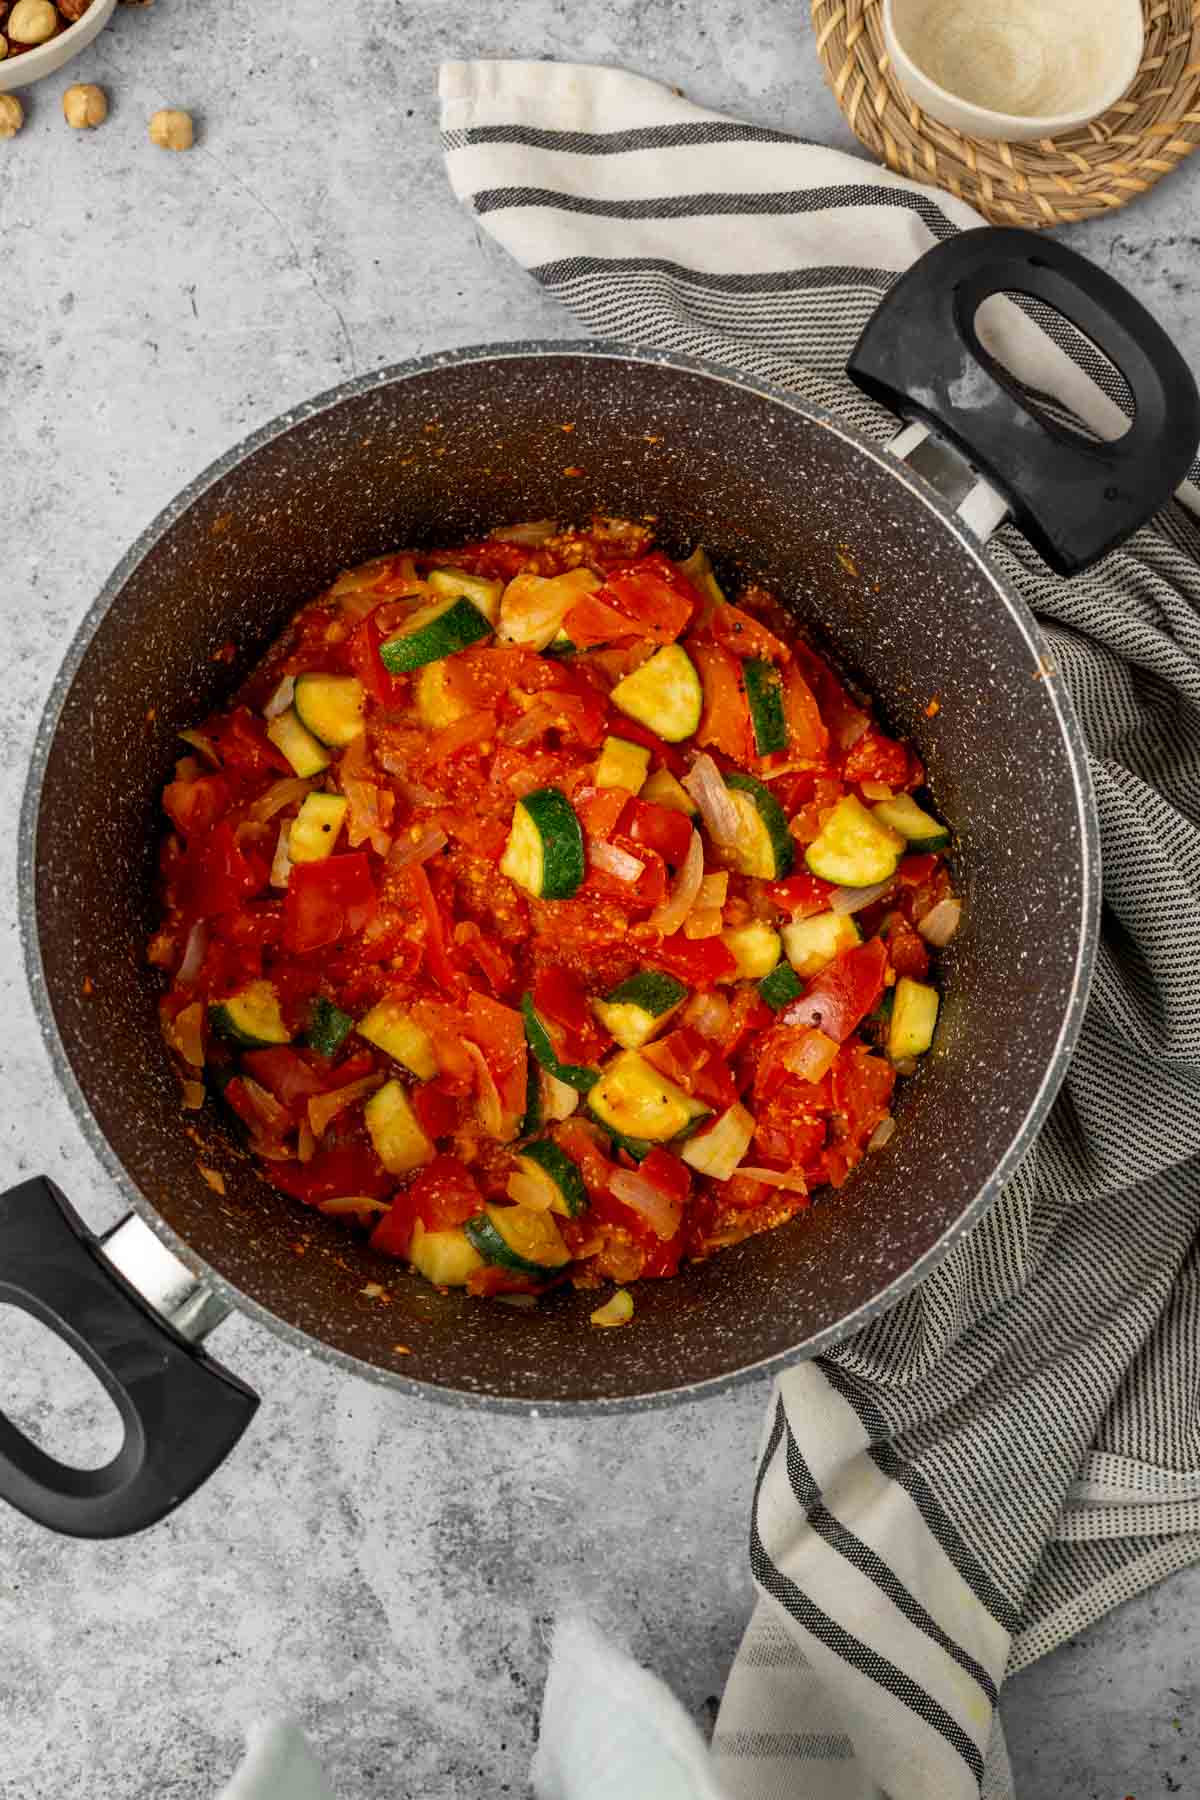 Sauteed veggies in a pan.